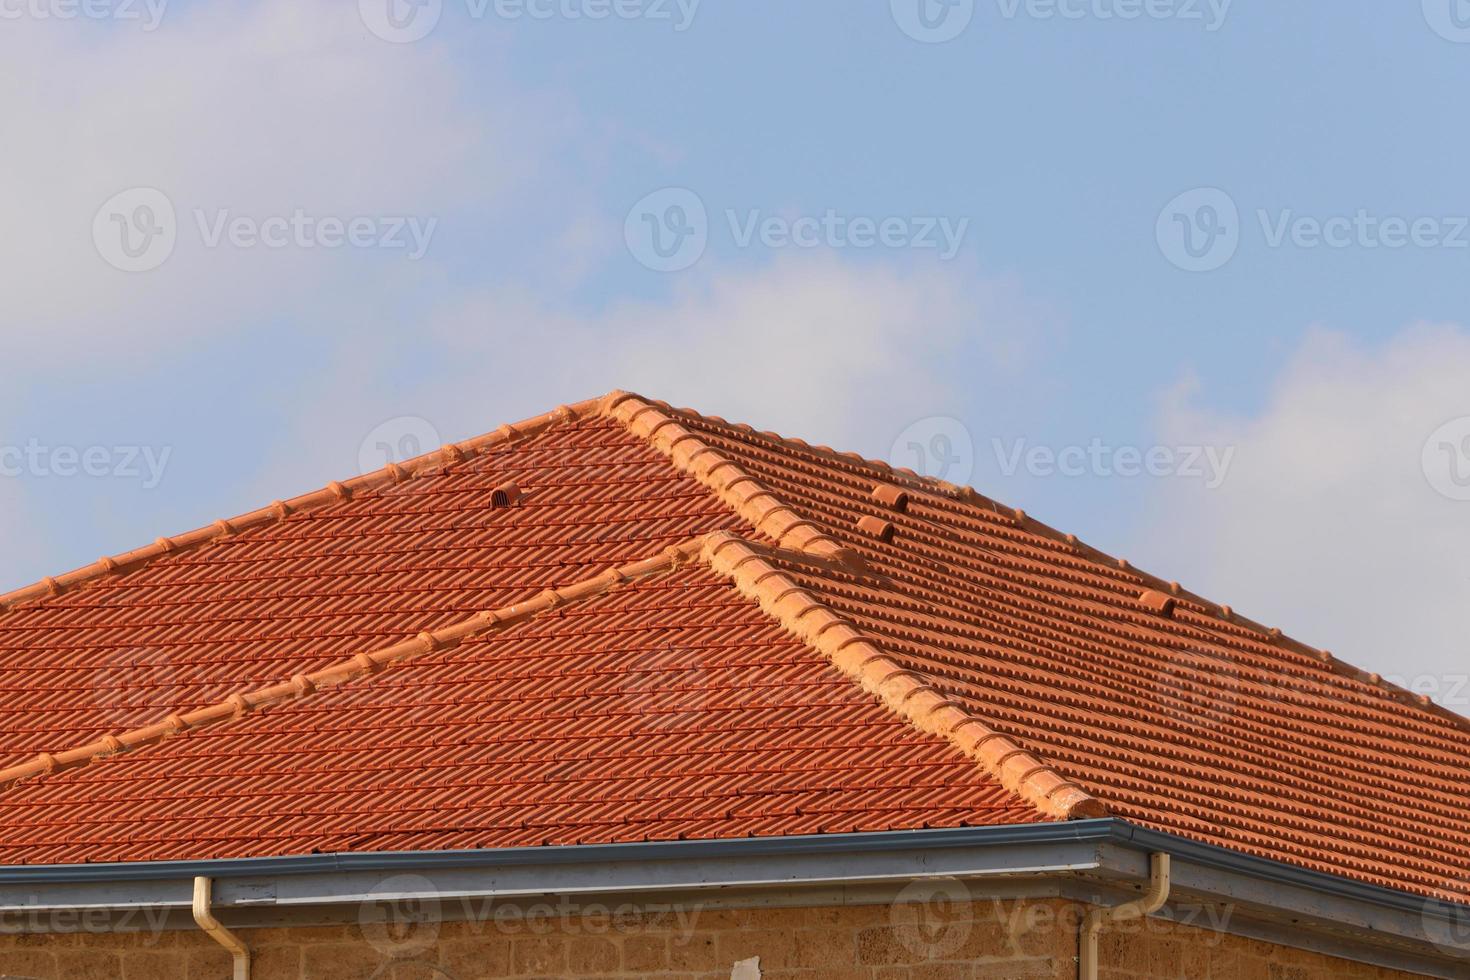 telhado de azulejos em um edifício residencial em israel. foto